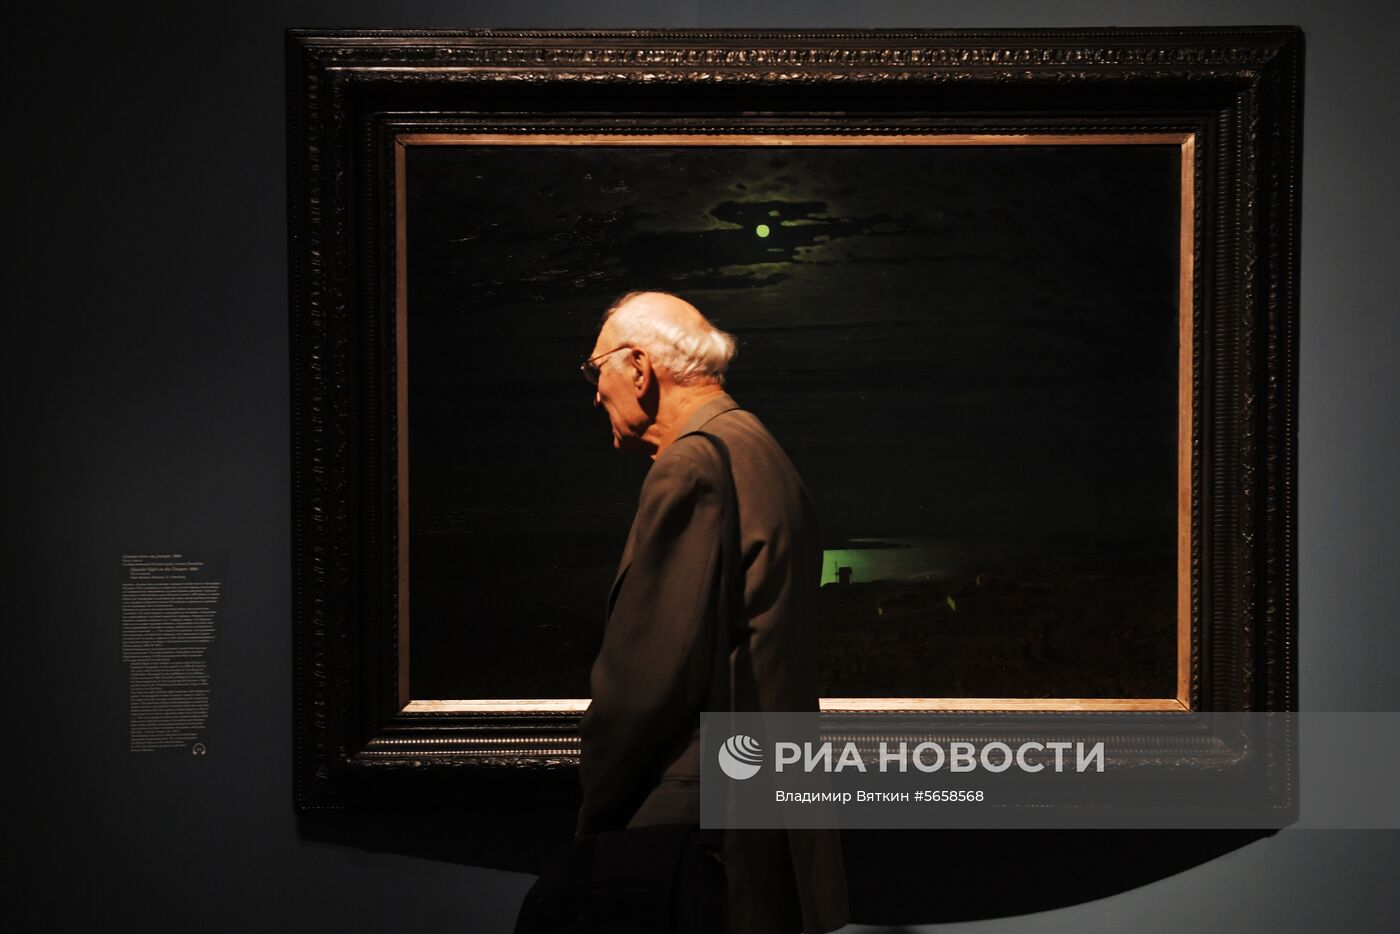 Выставка "Архип Куинджи" в Третьяковской галерее